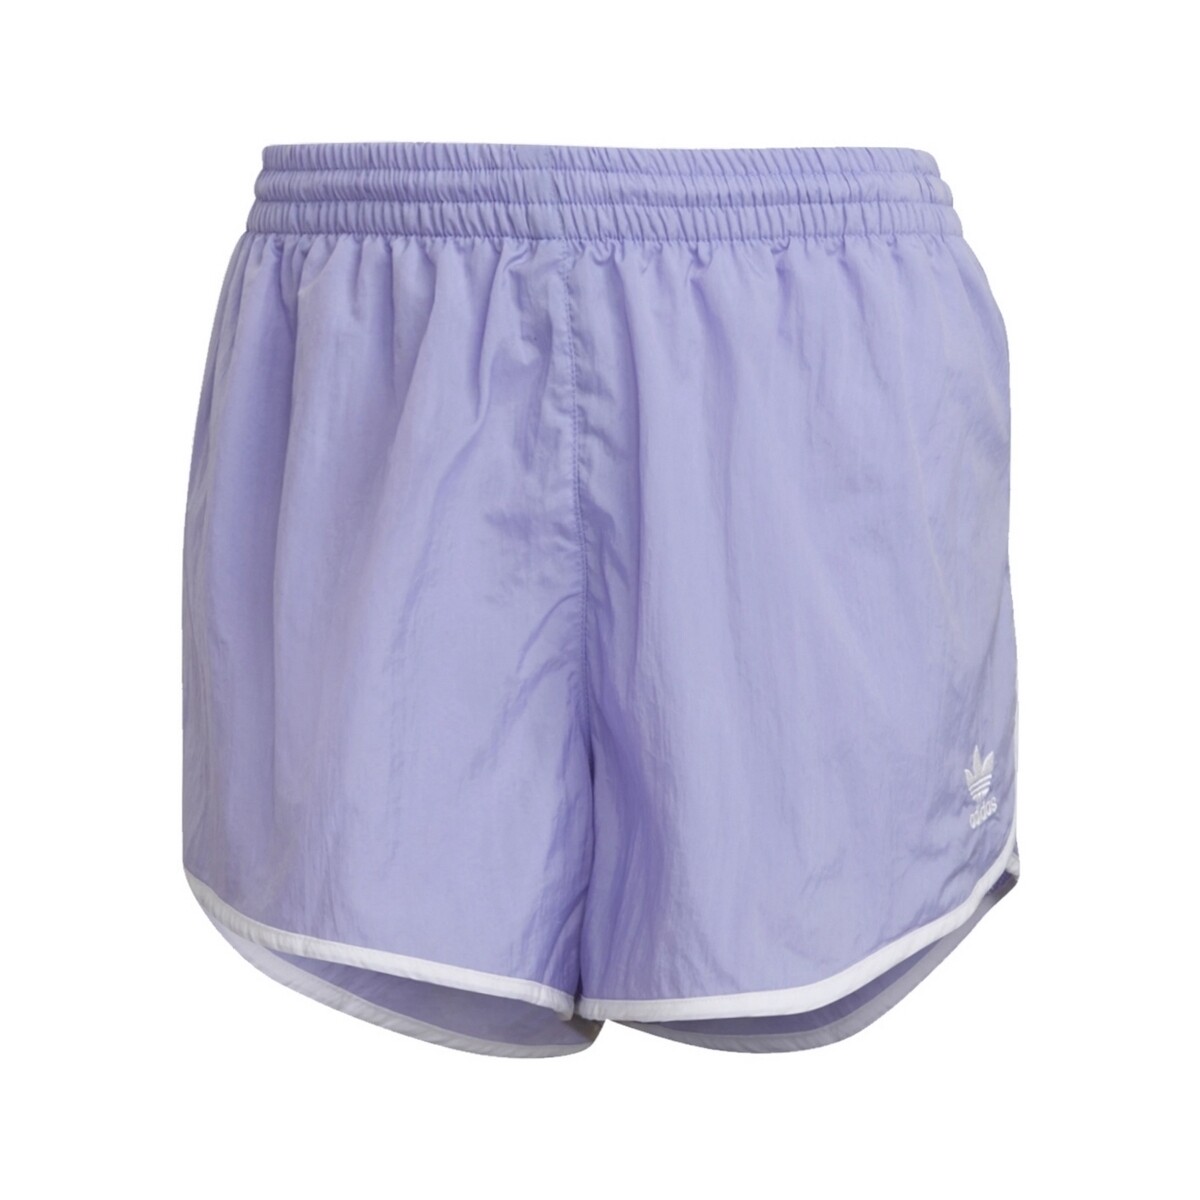 Textil Mulher Shorts / Bermudas adidas Originals GN6766 Violeta